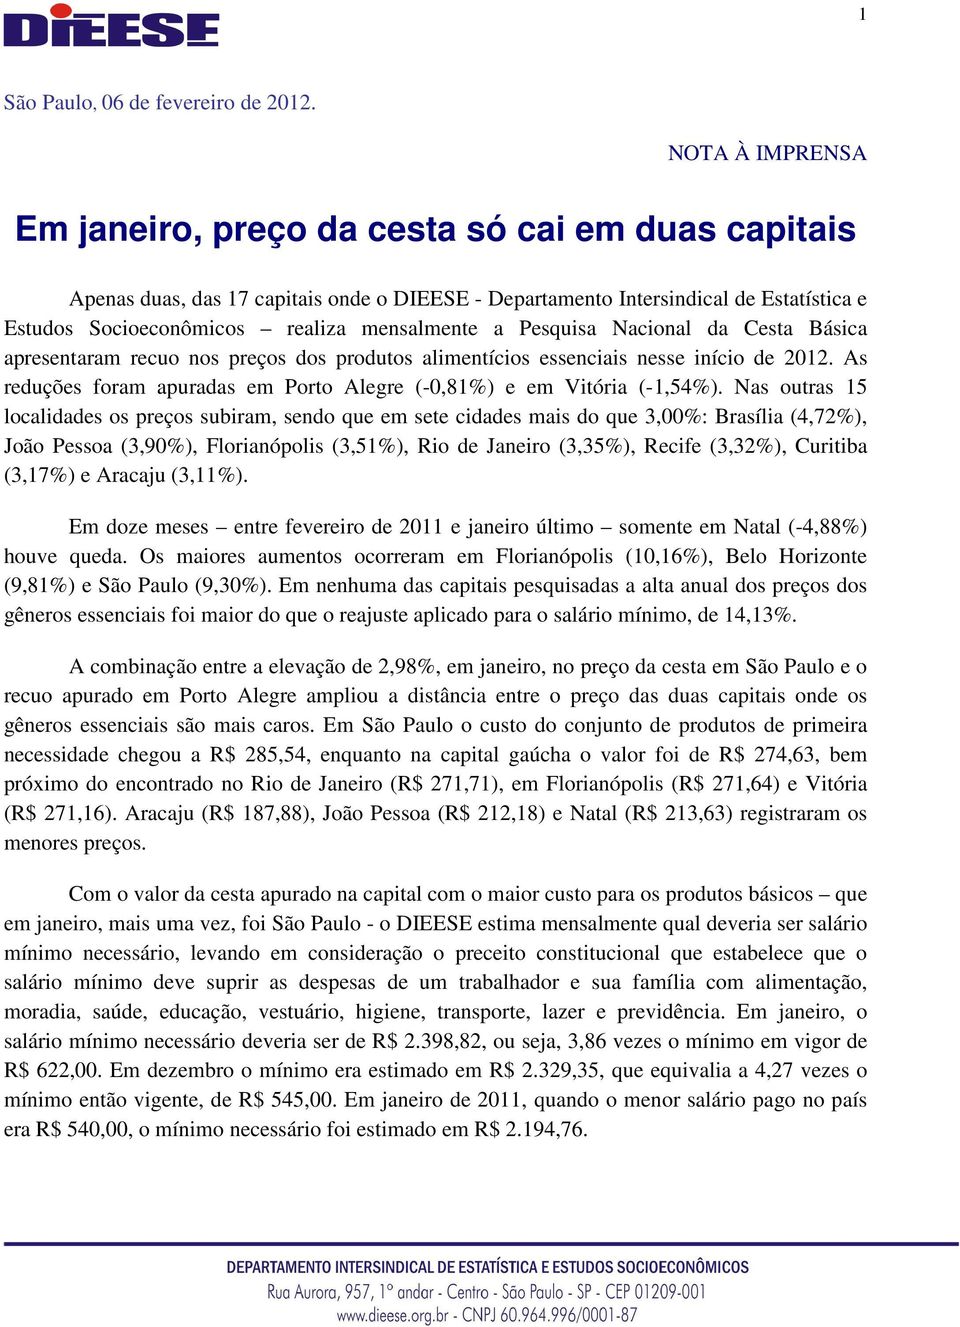 a Pesquisa Nacional da Cesta Básica apresentaram recuo nos preços dos produtos alimentícios essenciais nesse início de 2012. As reduções foram apuradas em Porto Alegre (-0,81%) e em Vitória (-1,54%).